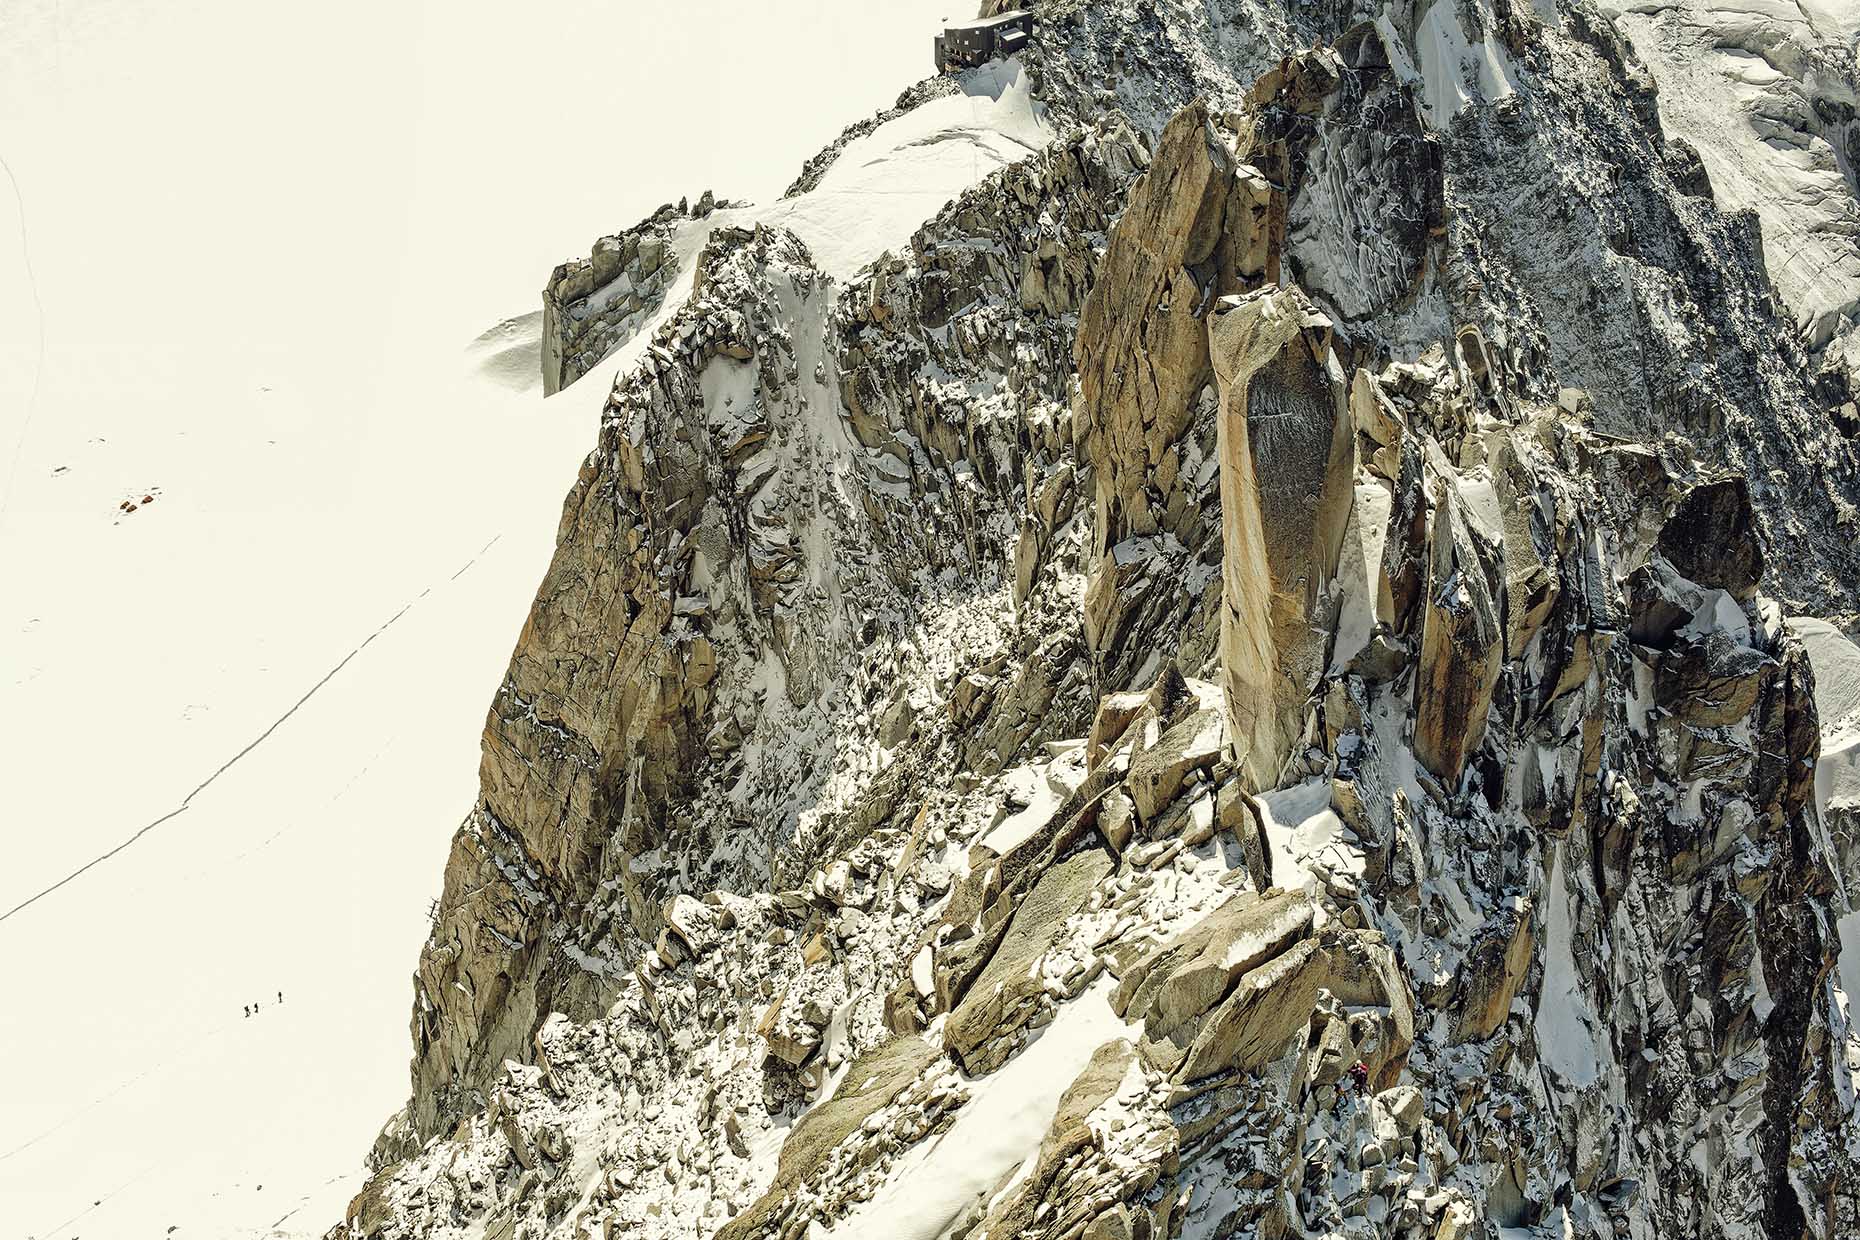 Chamonix Mountain Guides